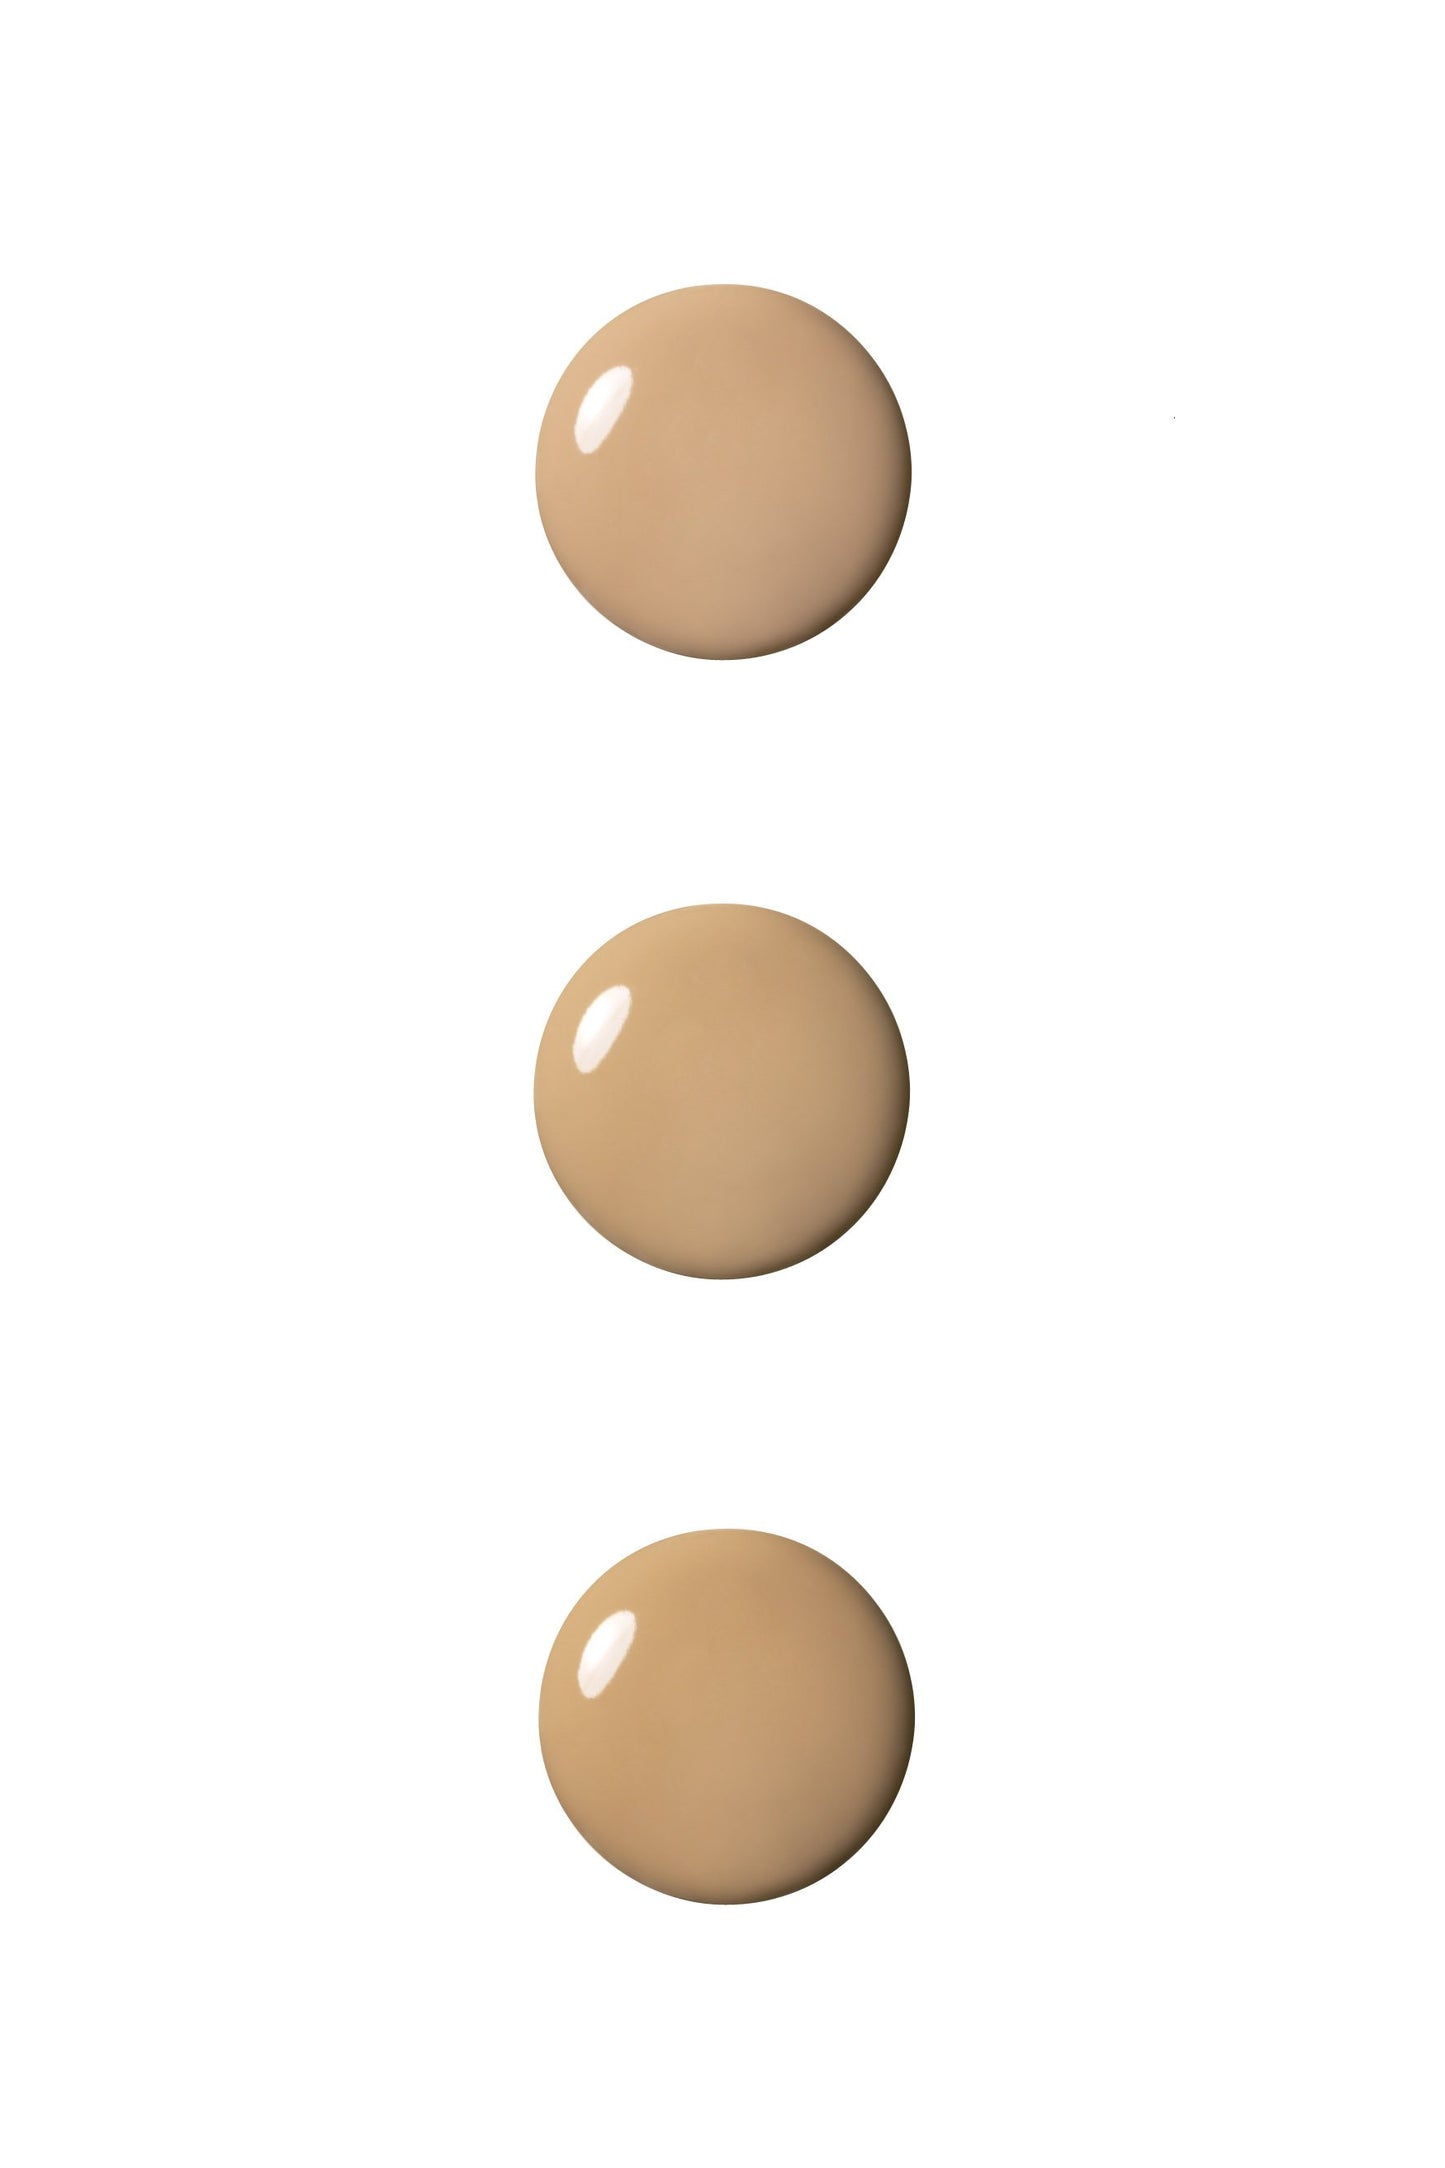 Anna Sui 3 dots of Spot Concealer color, LIGHT, MEDIUM, DARK